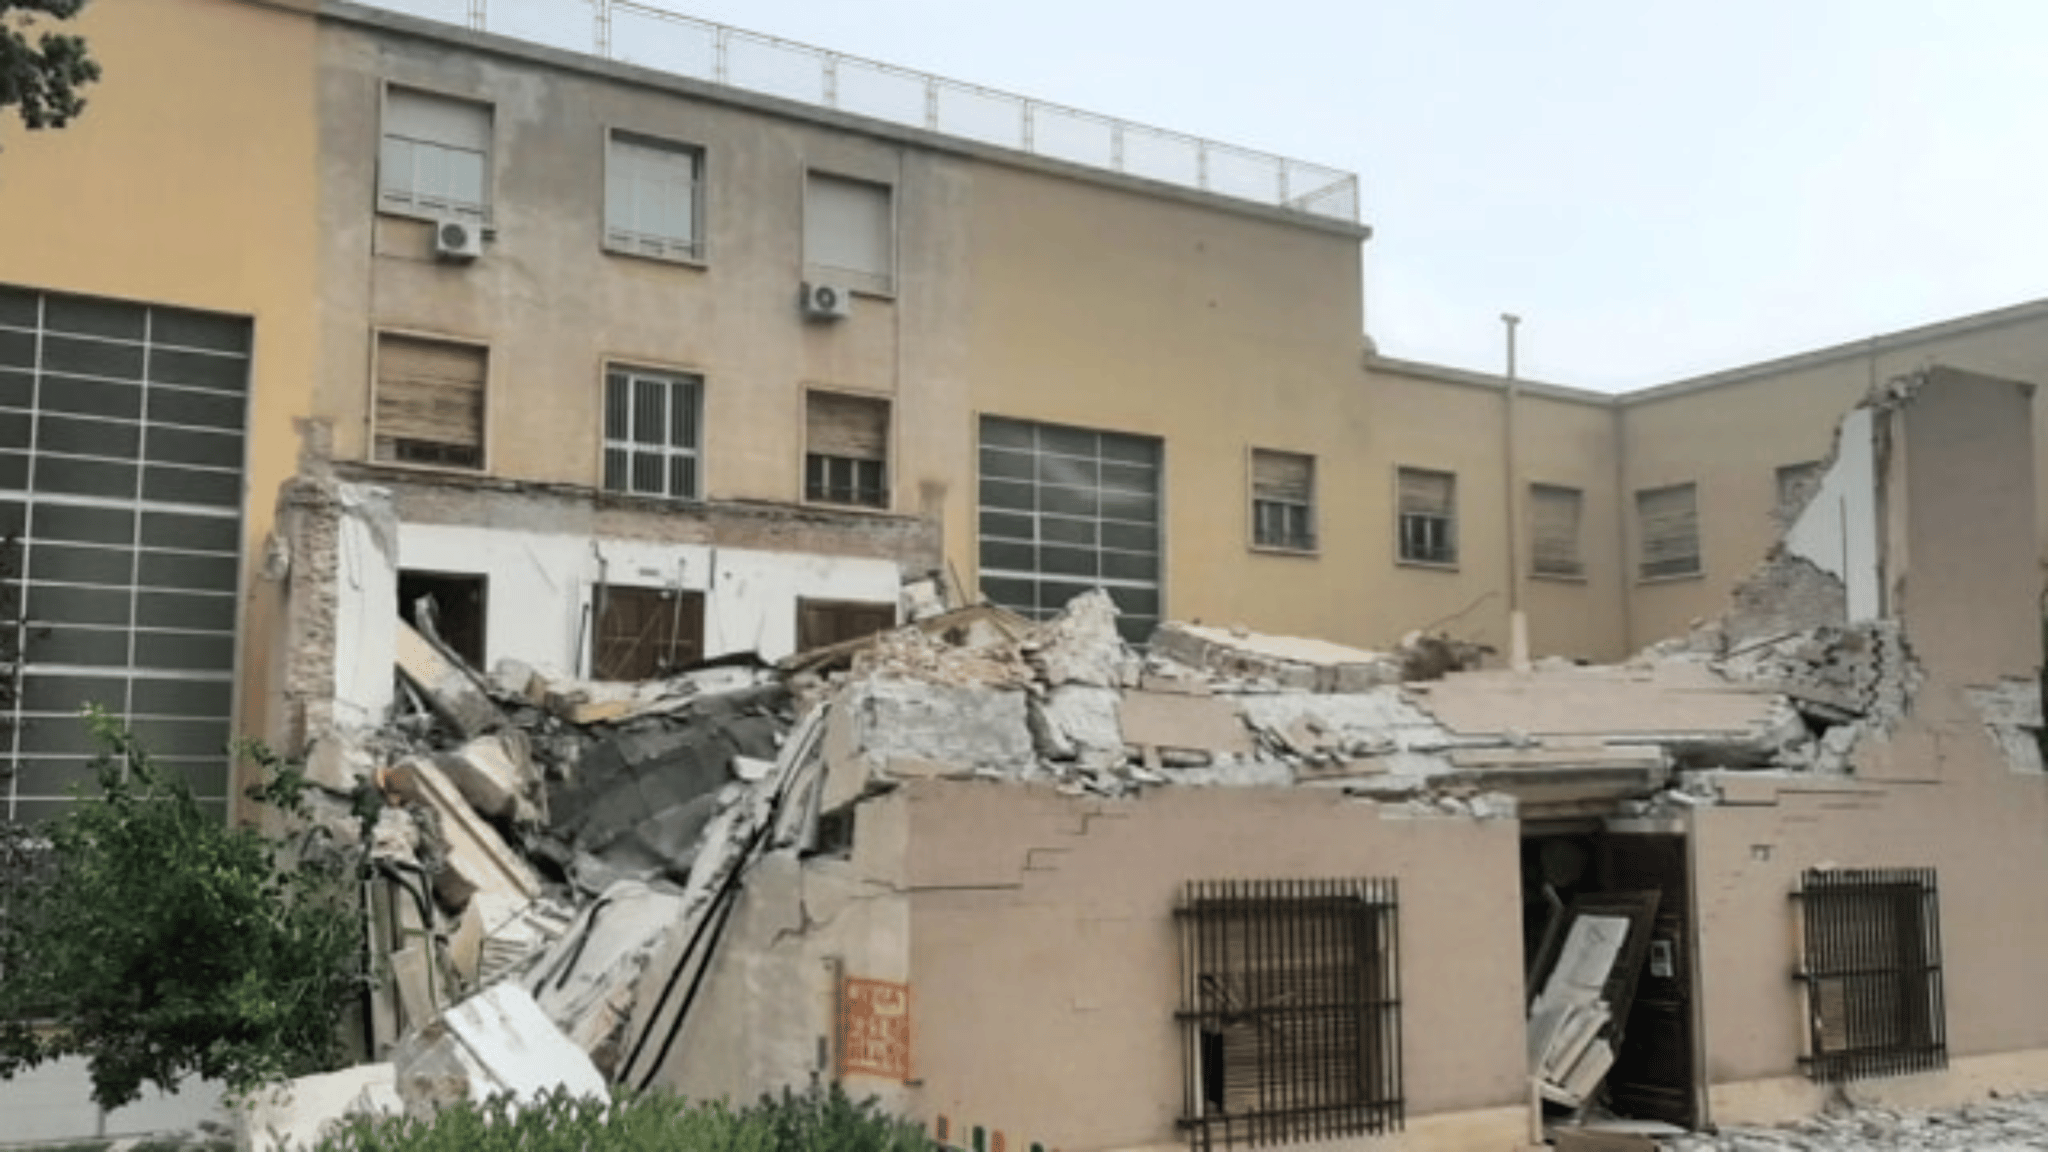 Crollo edificio all'Università di Cagliari. Fortunatamente nessuna vittima. "Evento inaccettabile"